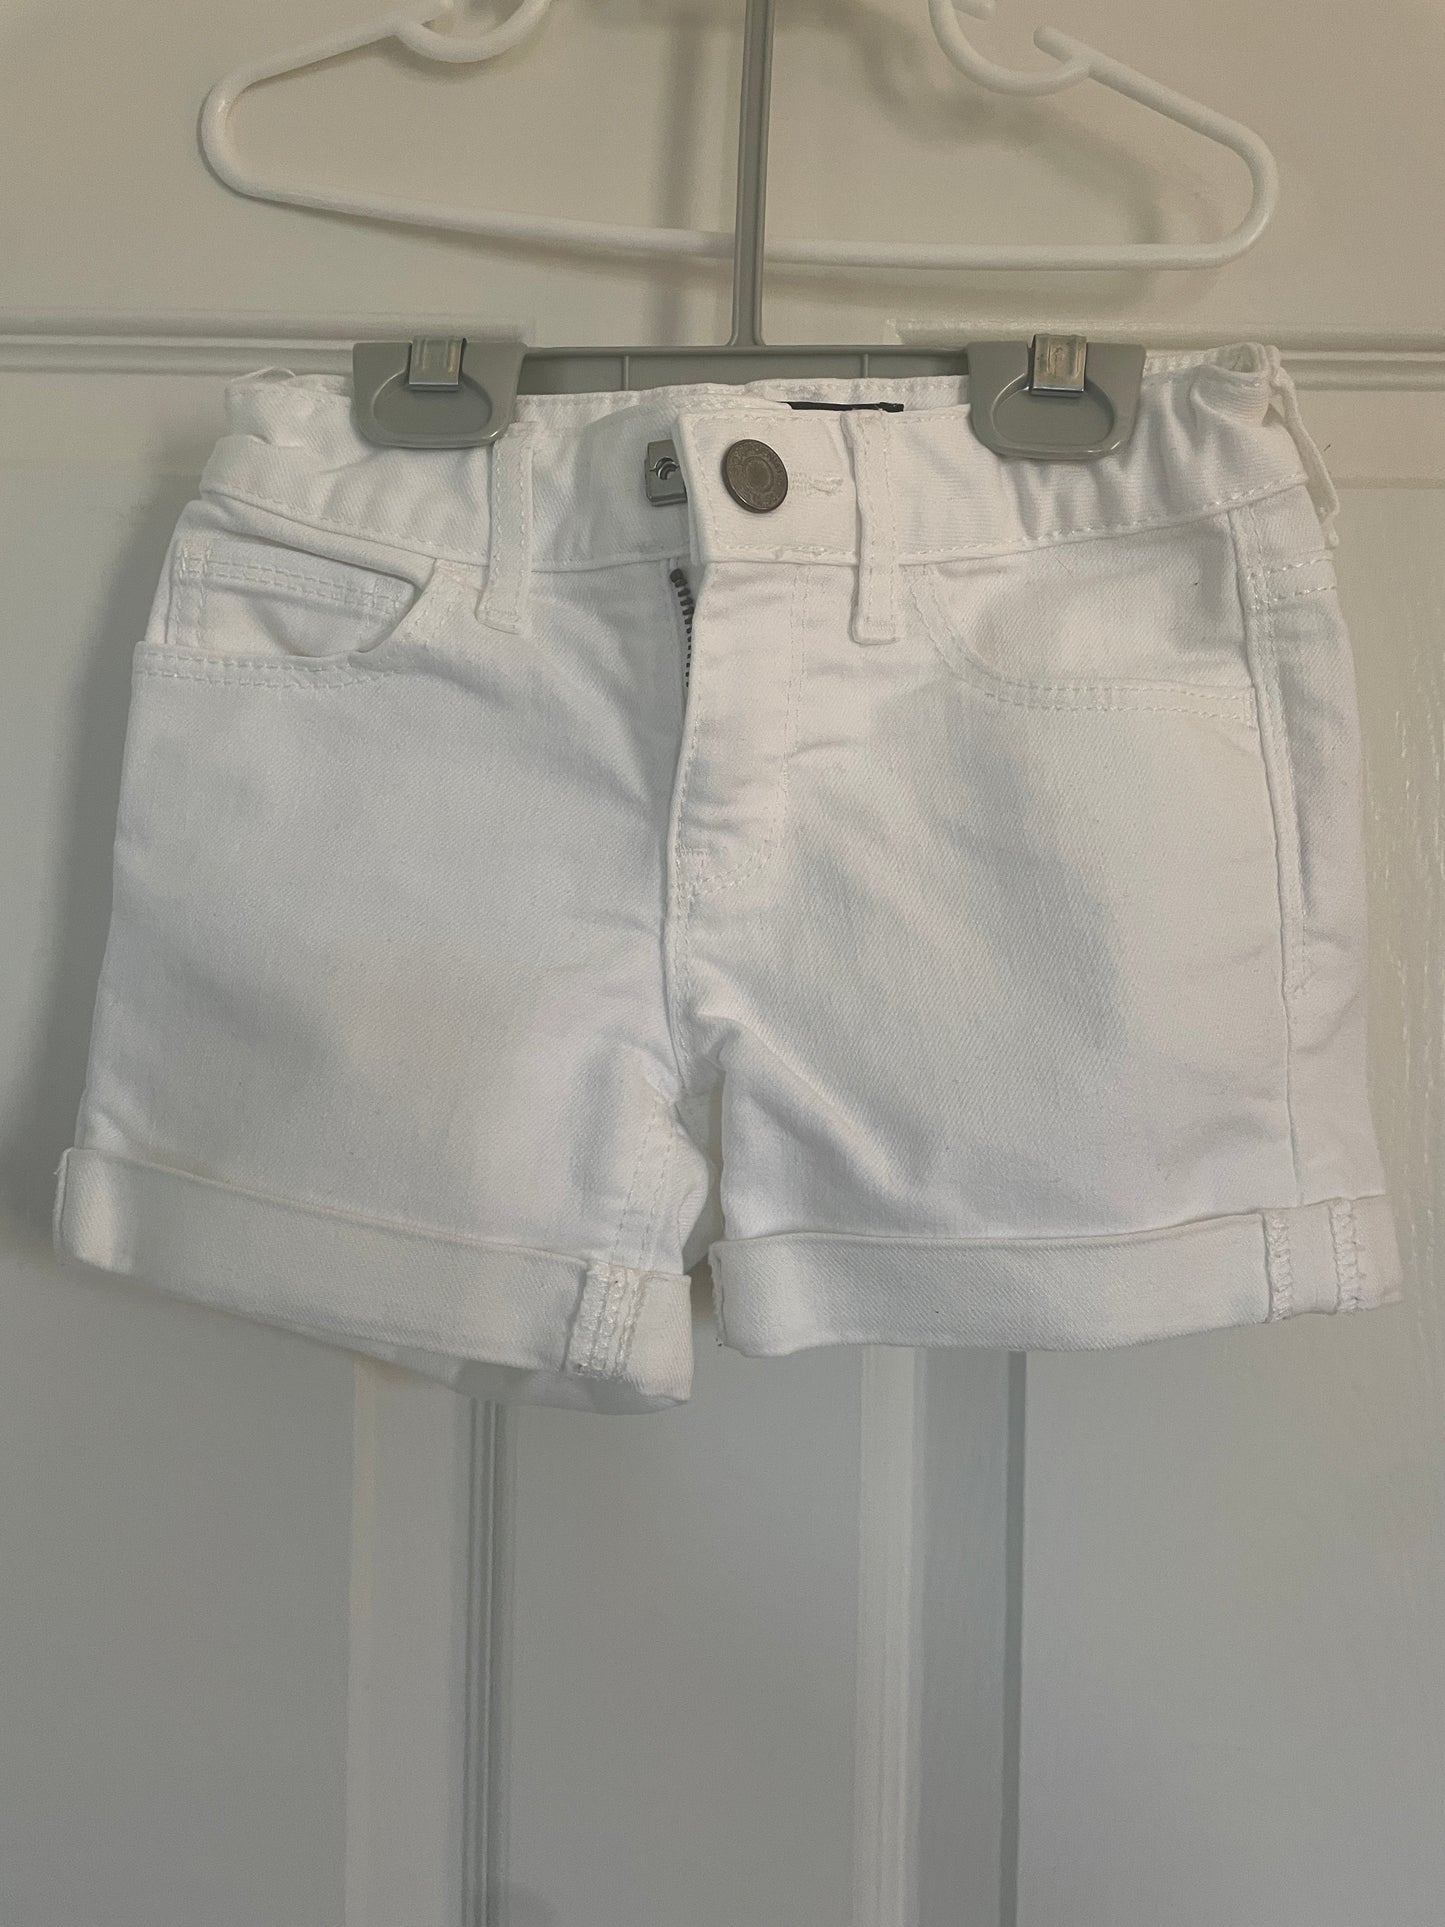 Girls Gap White Denim Shorts Size 6